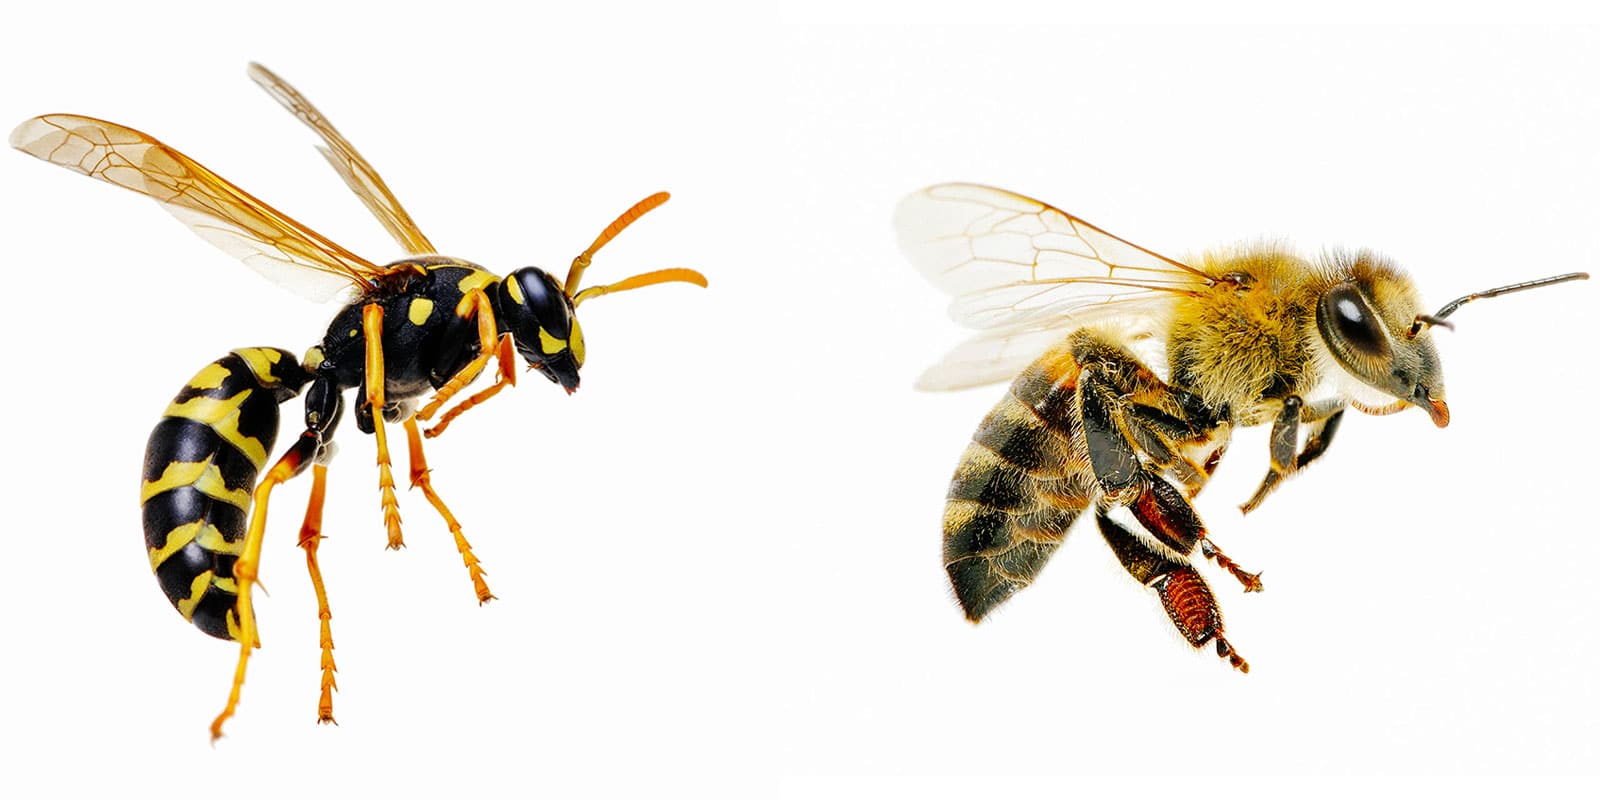 Wasp vs. bee comparison